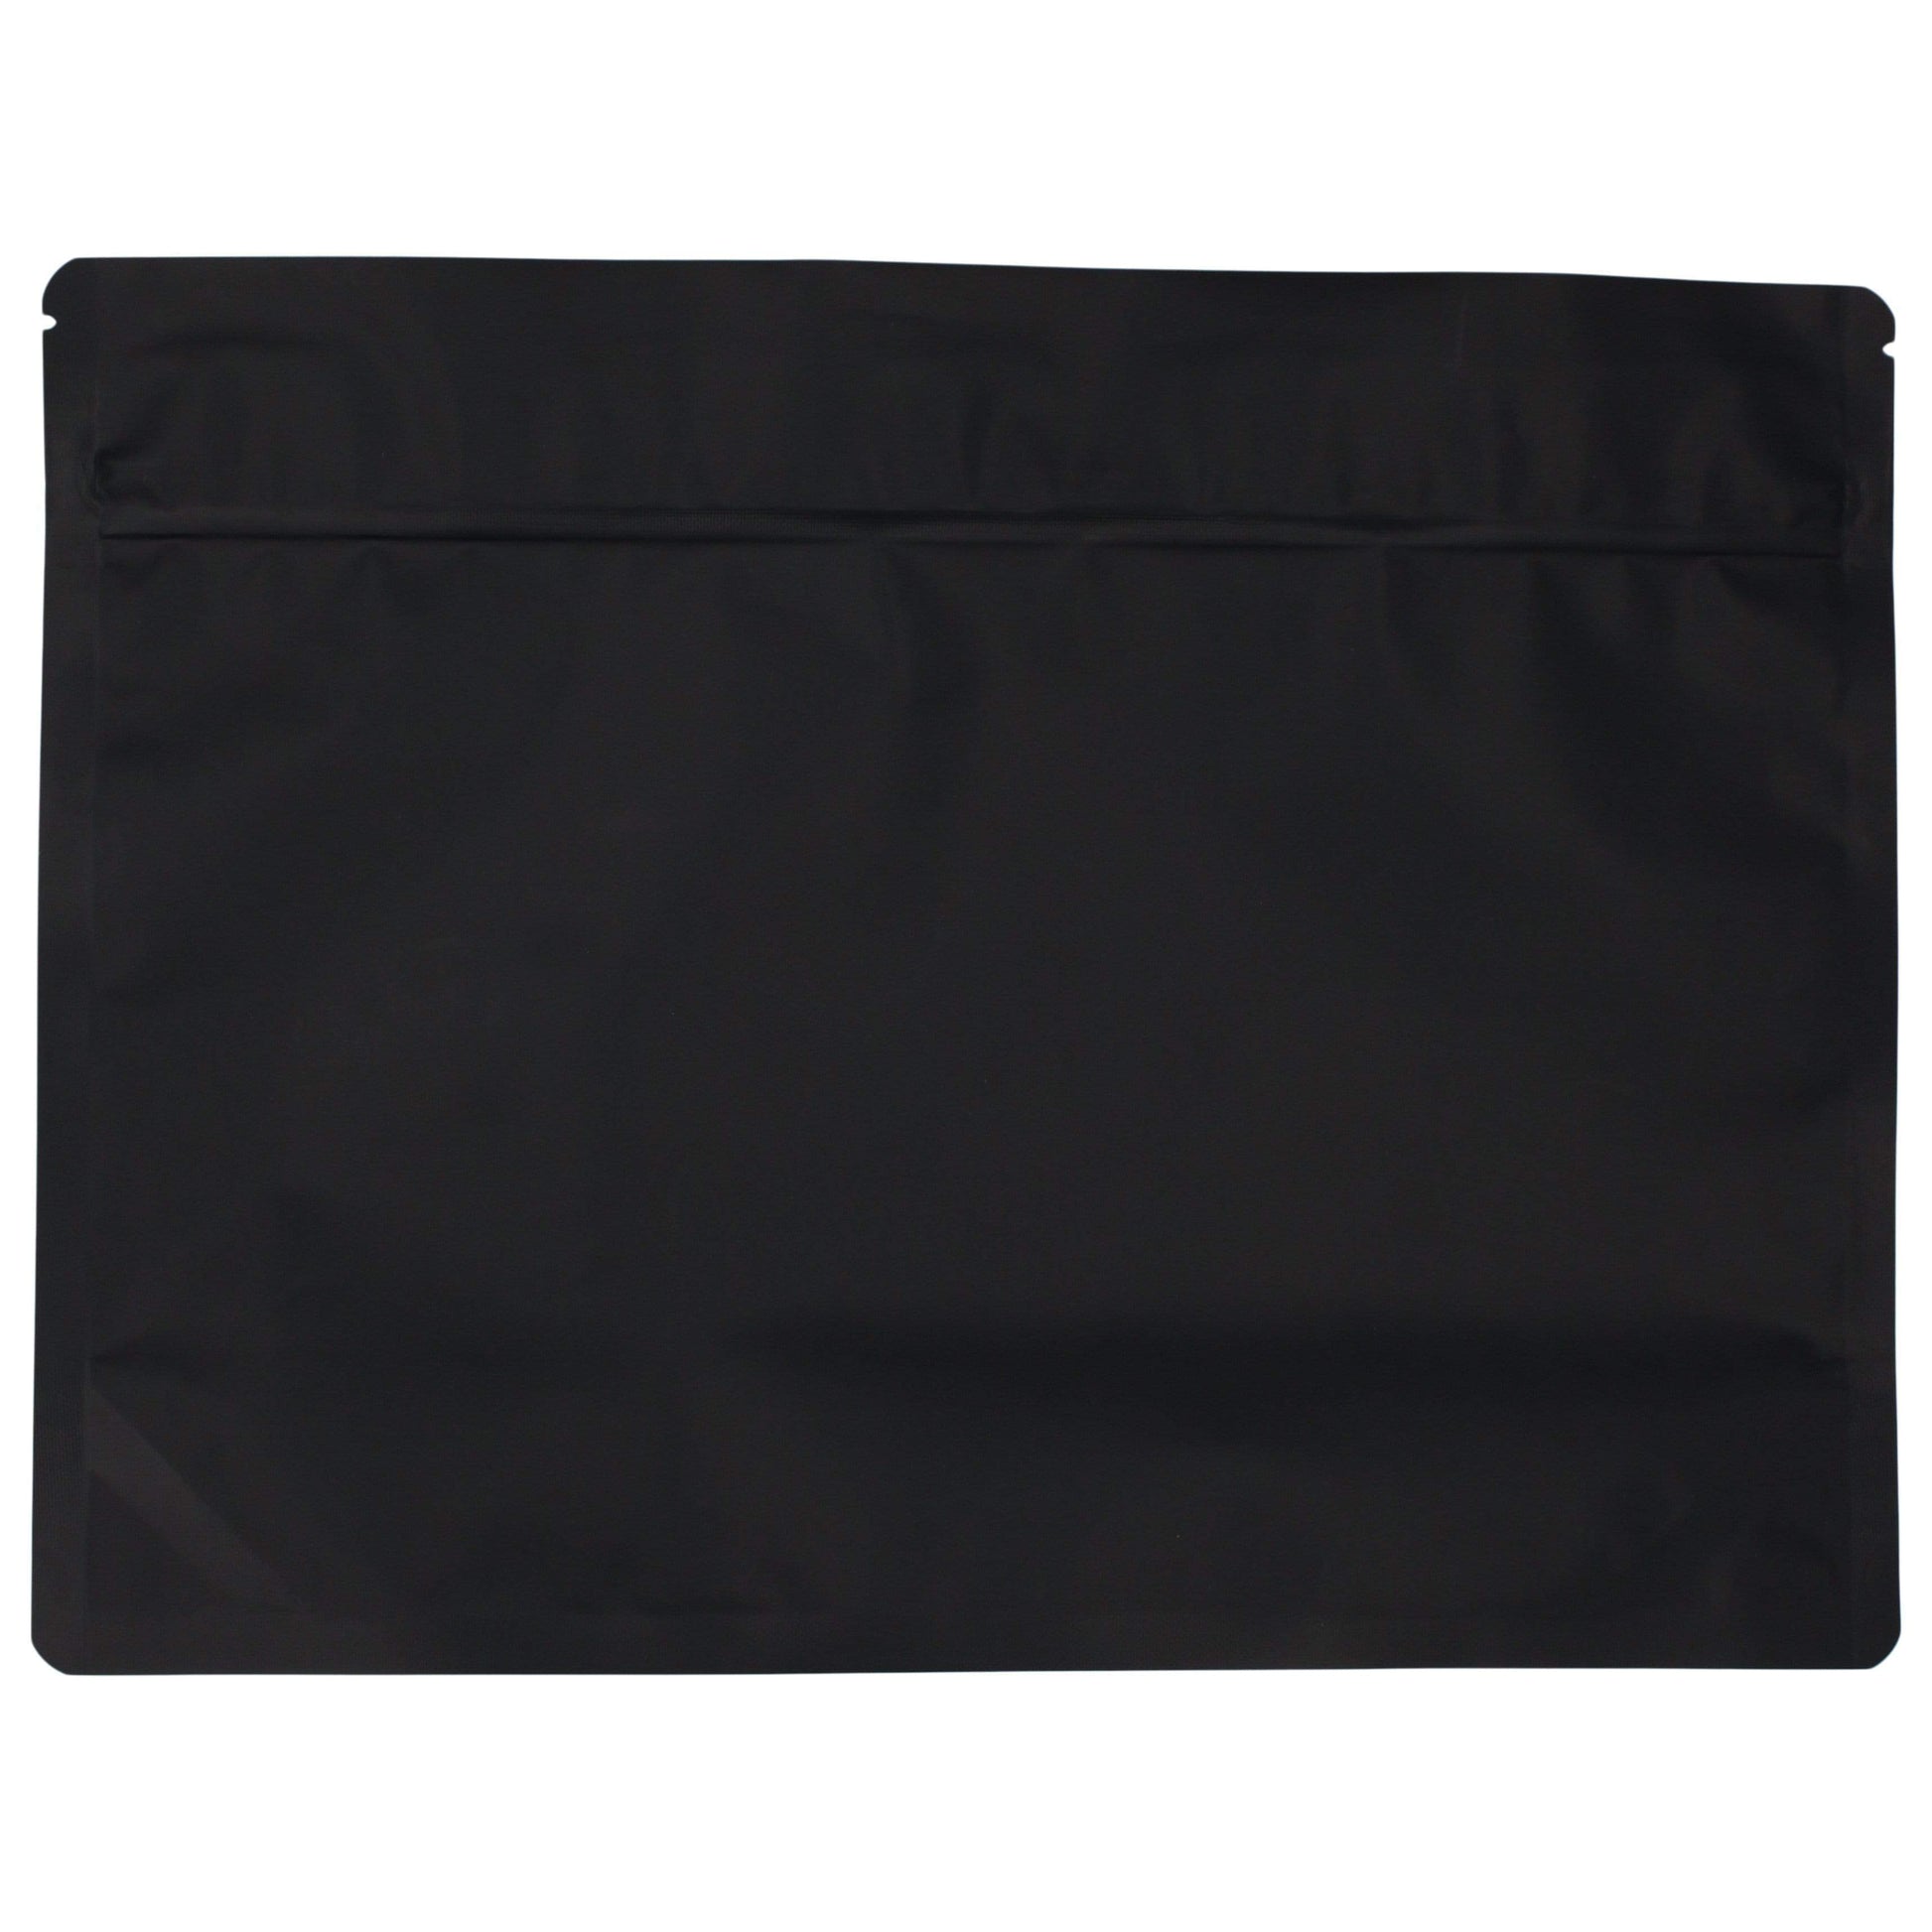 Bag King Large Child-Resistant Opaque Exit Bag (1/2 lb) 9.0" x 12.0"